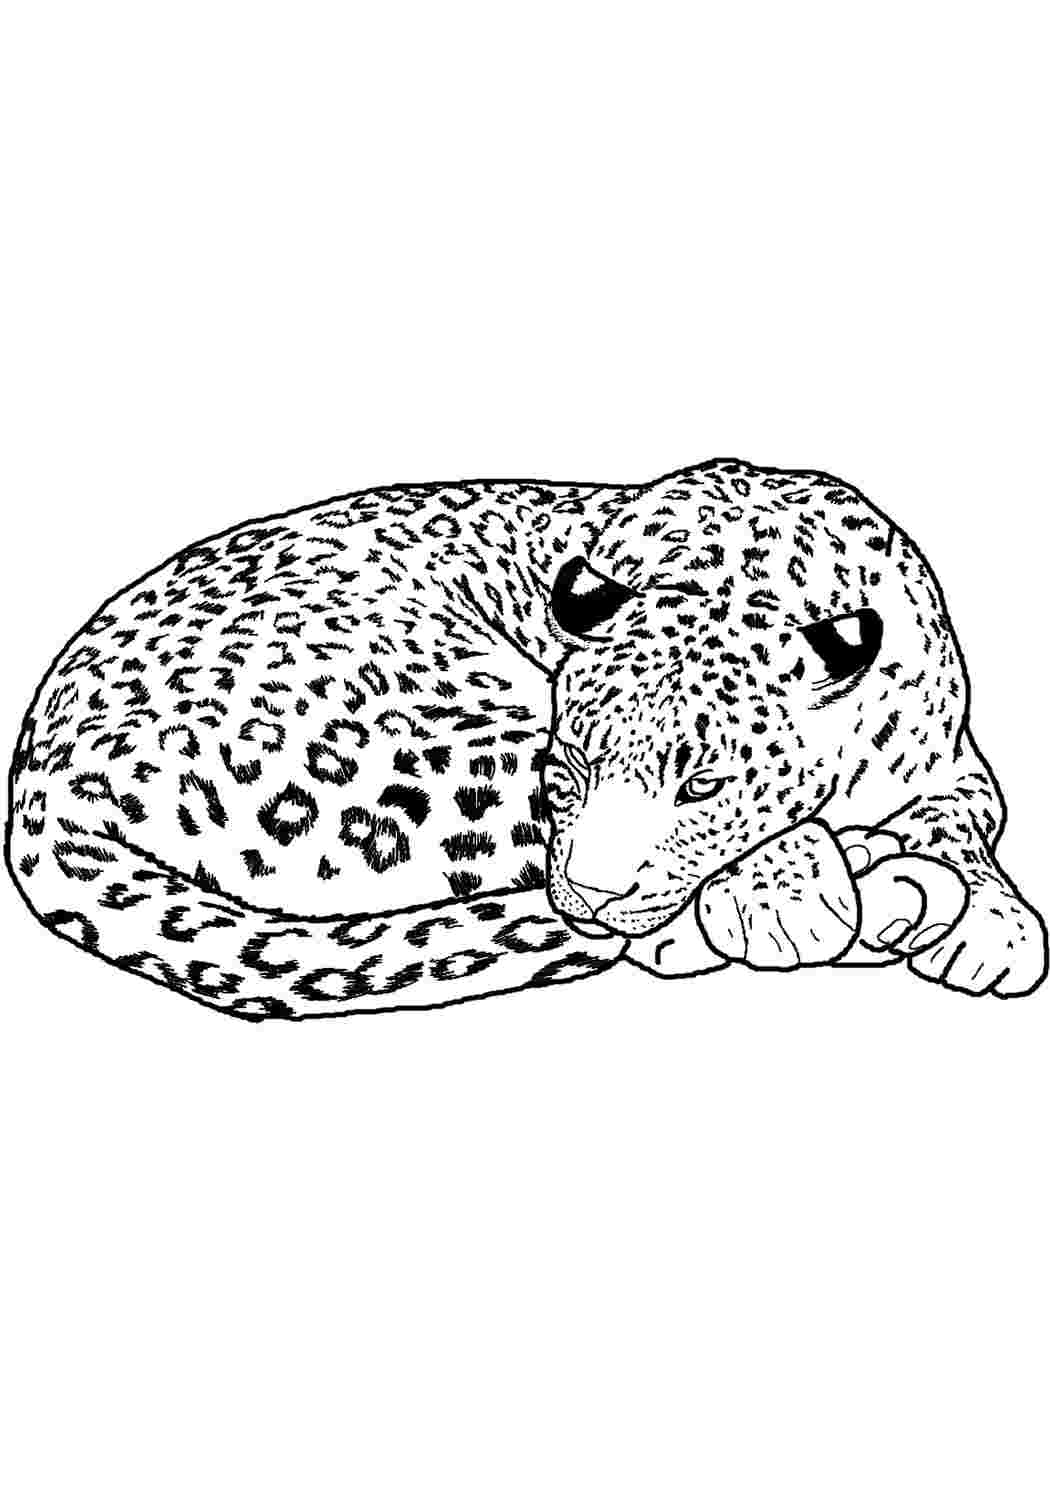 Переднеазиатский леопард раскраска для детей